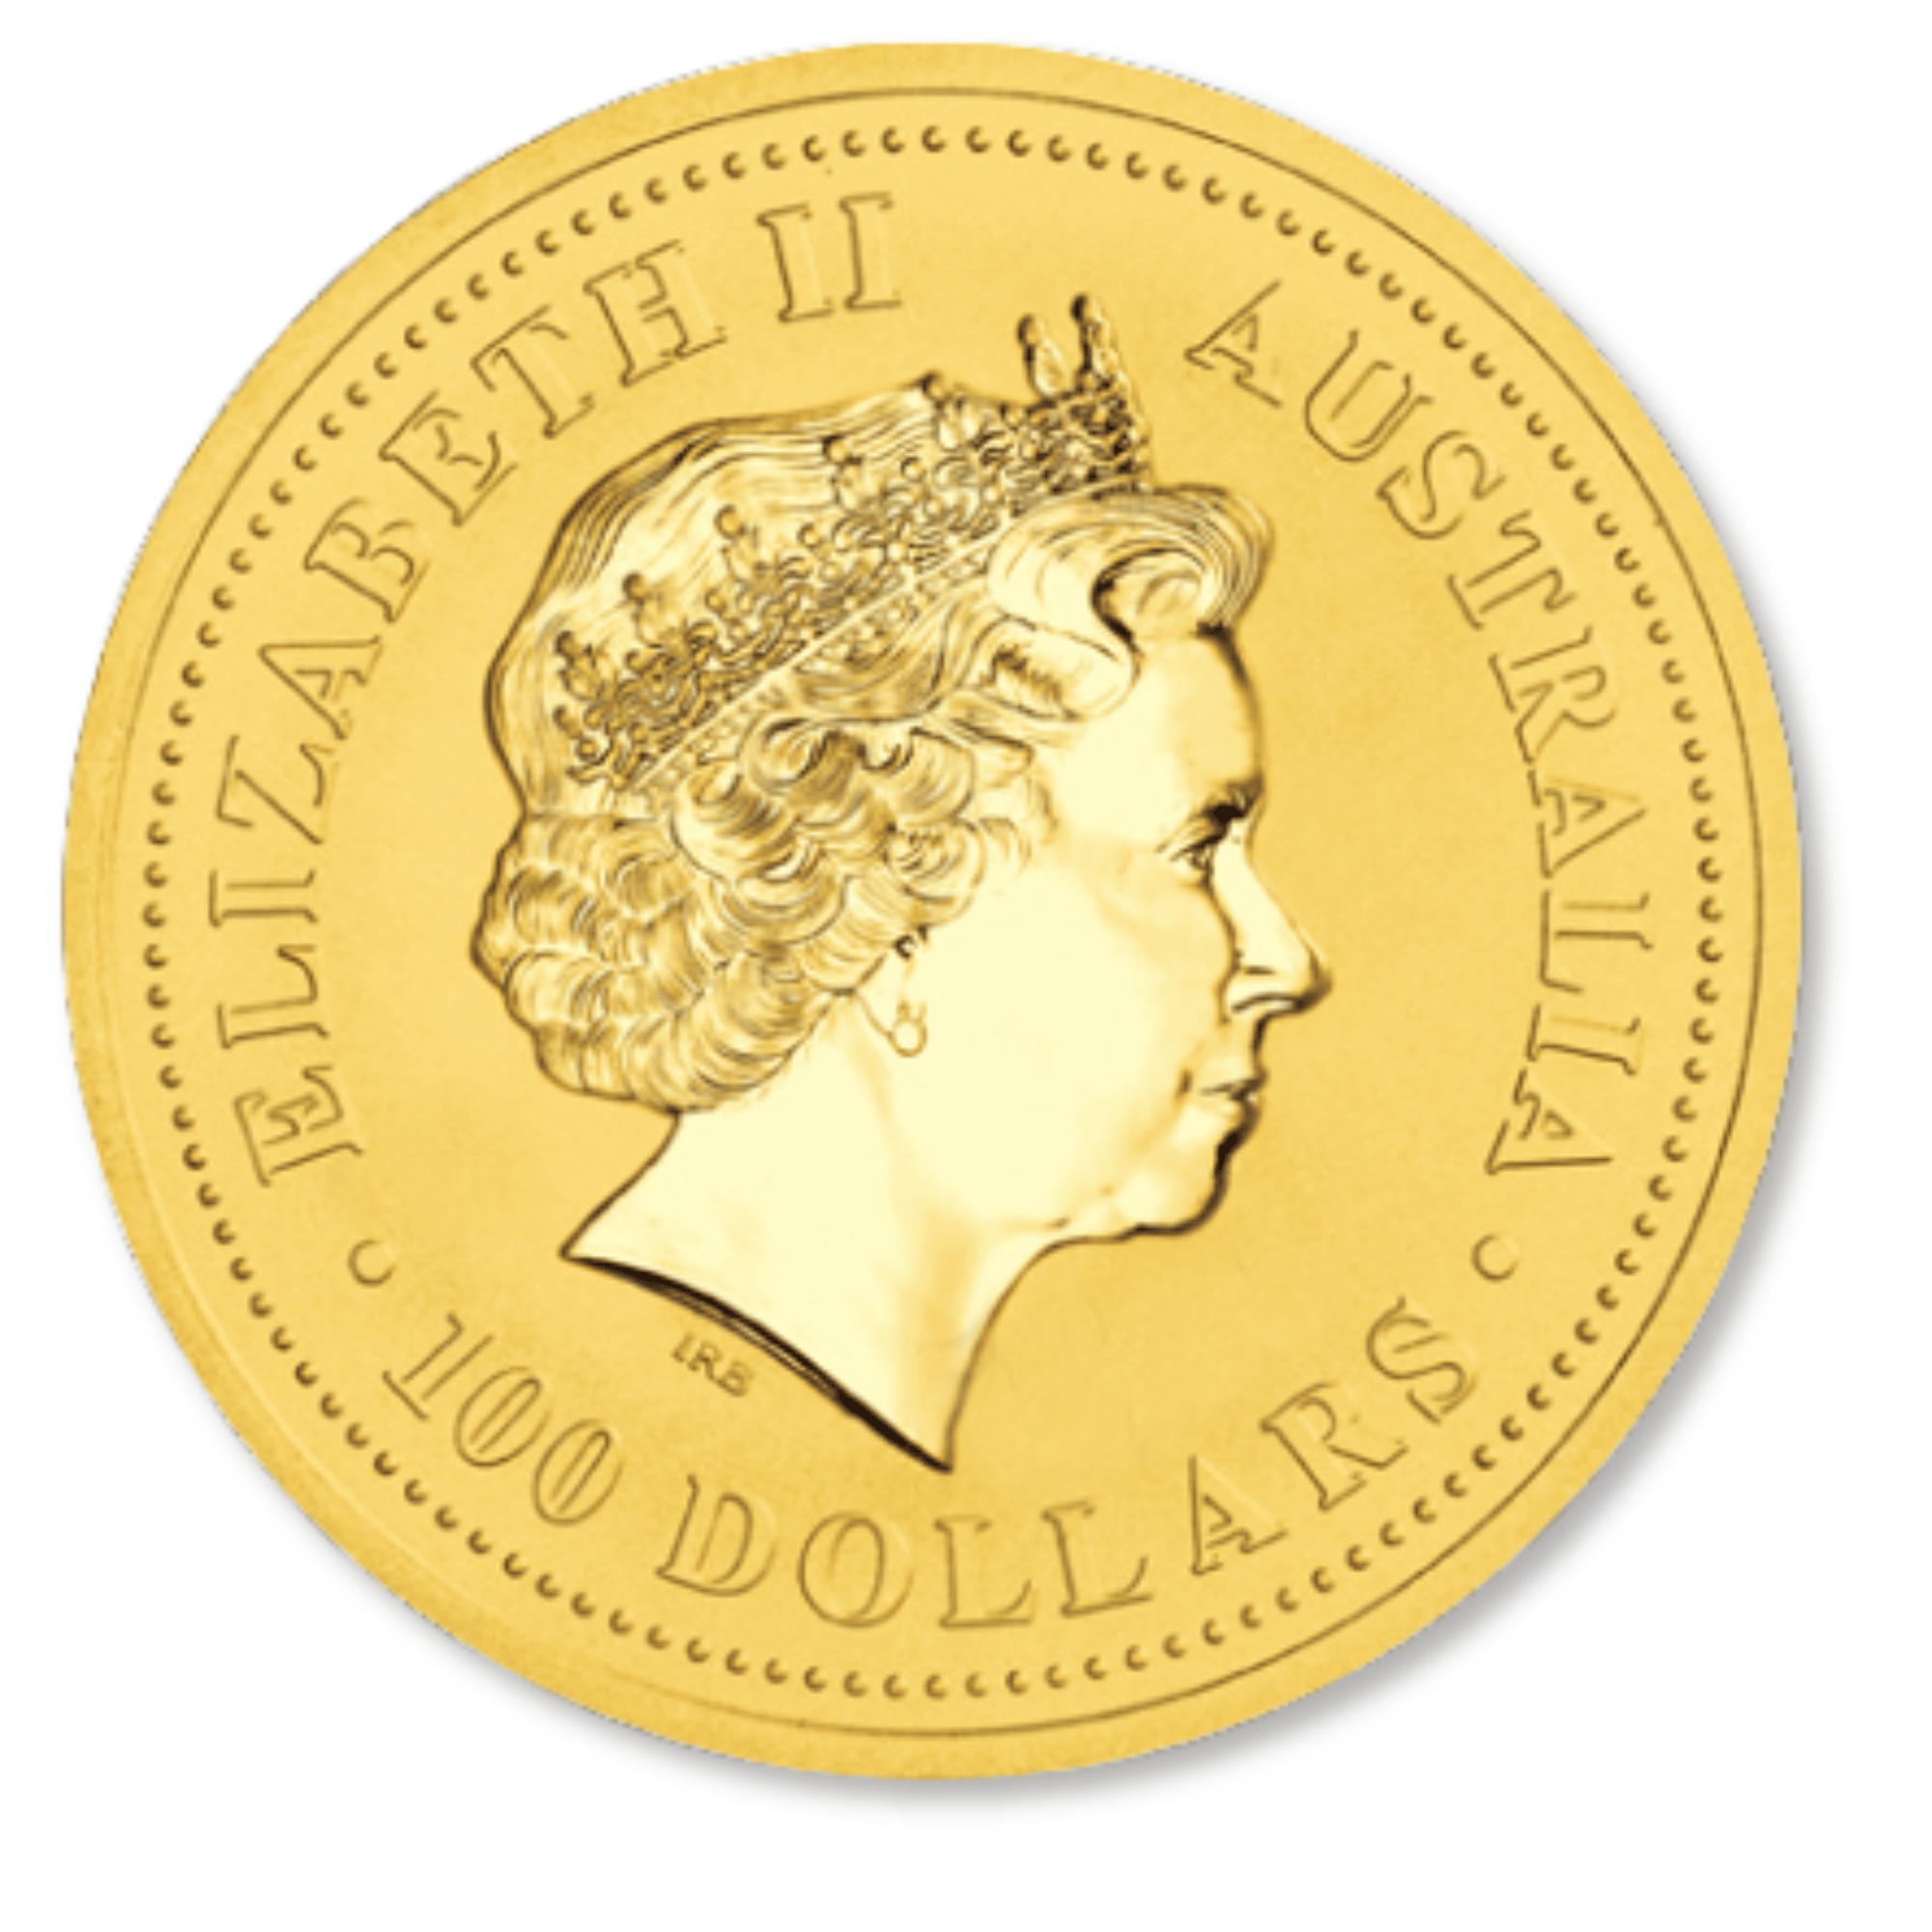 2007 1oz Perth Mint Gold Lunar Pig Coin Series 1